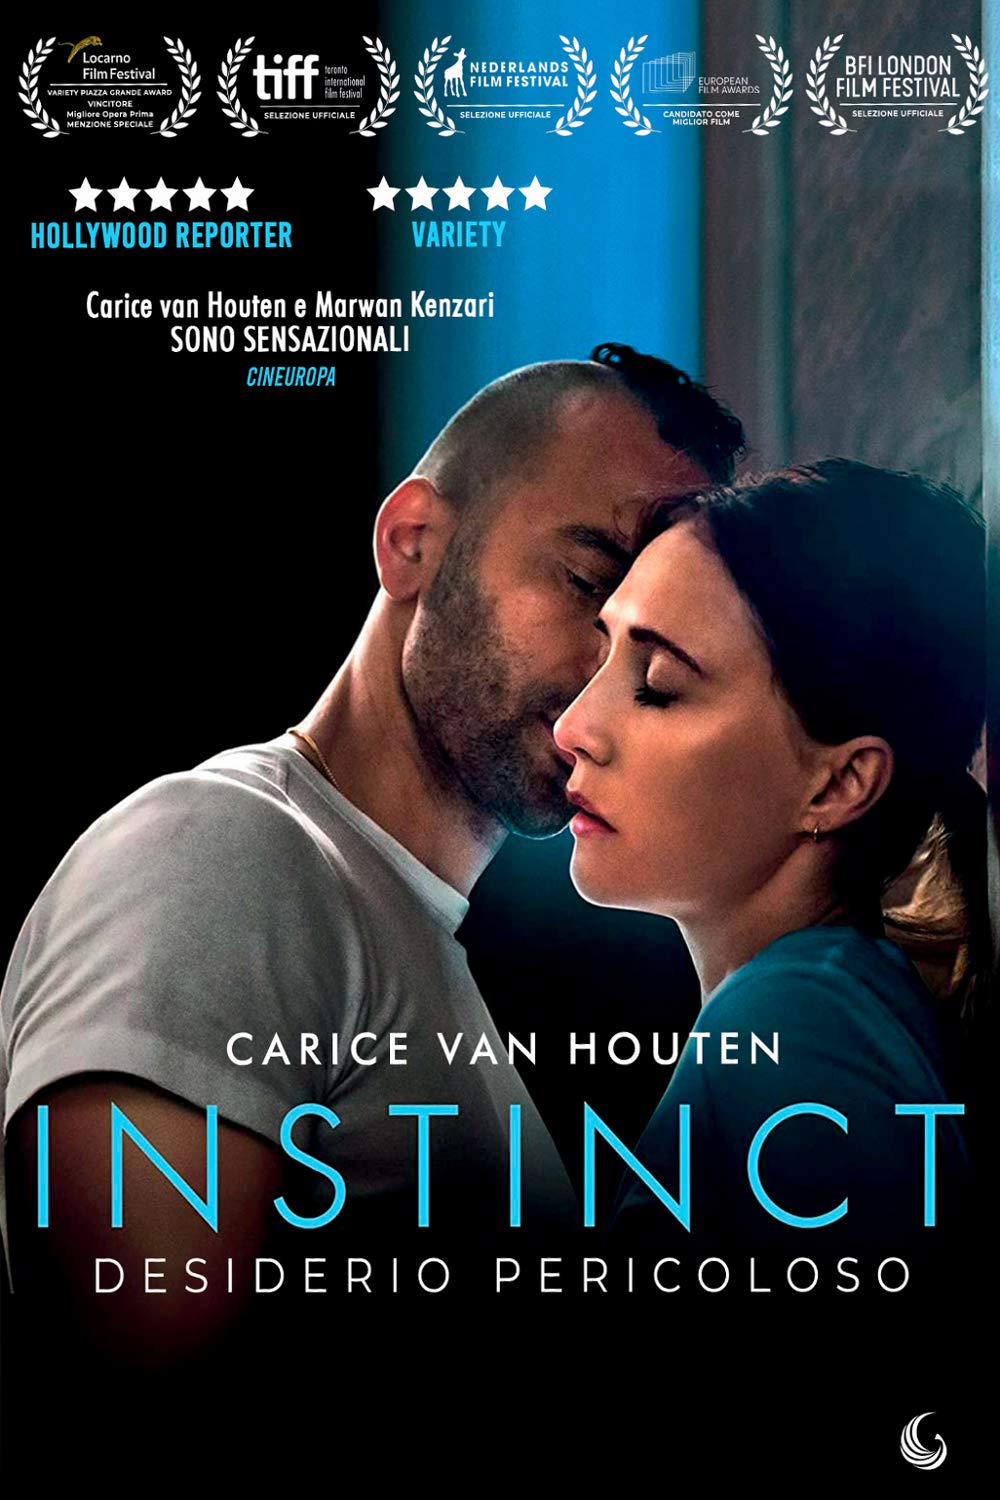 Instinct – Desiderio pericoloso [HD] (2019)